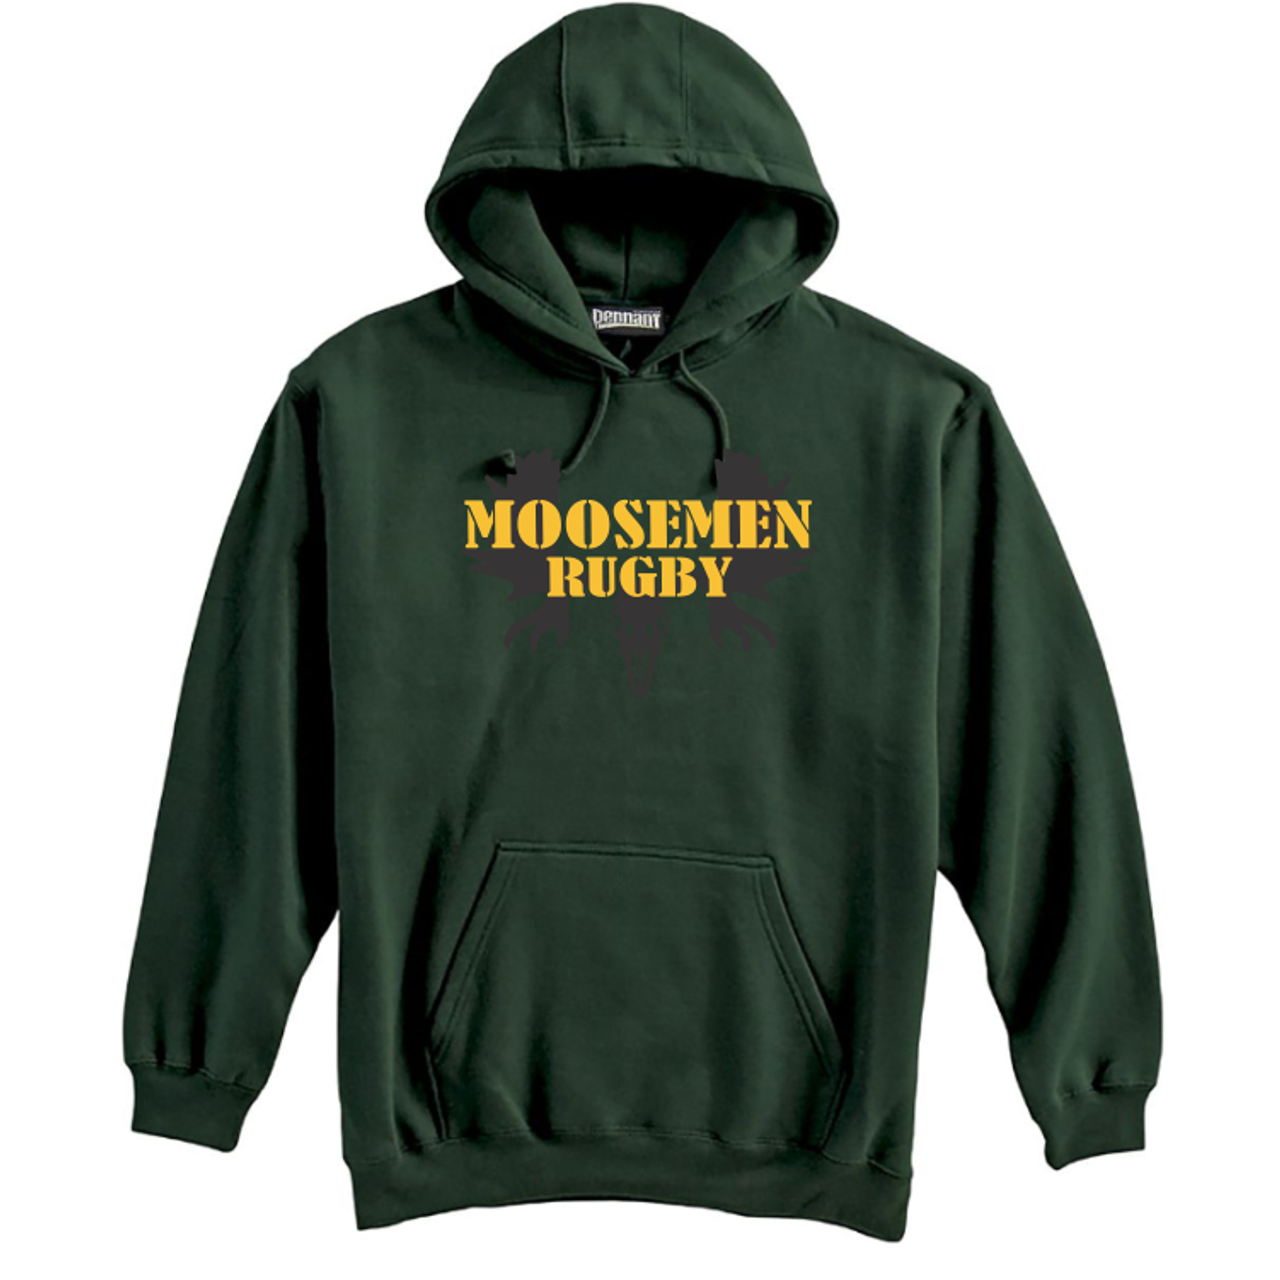 Moosemen Rugby Hoodie, Forest